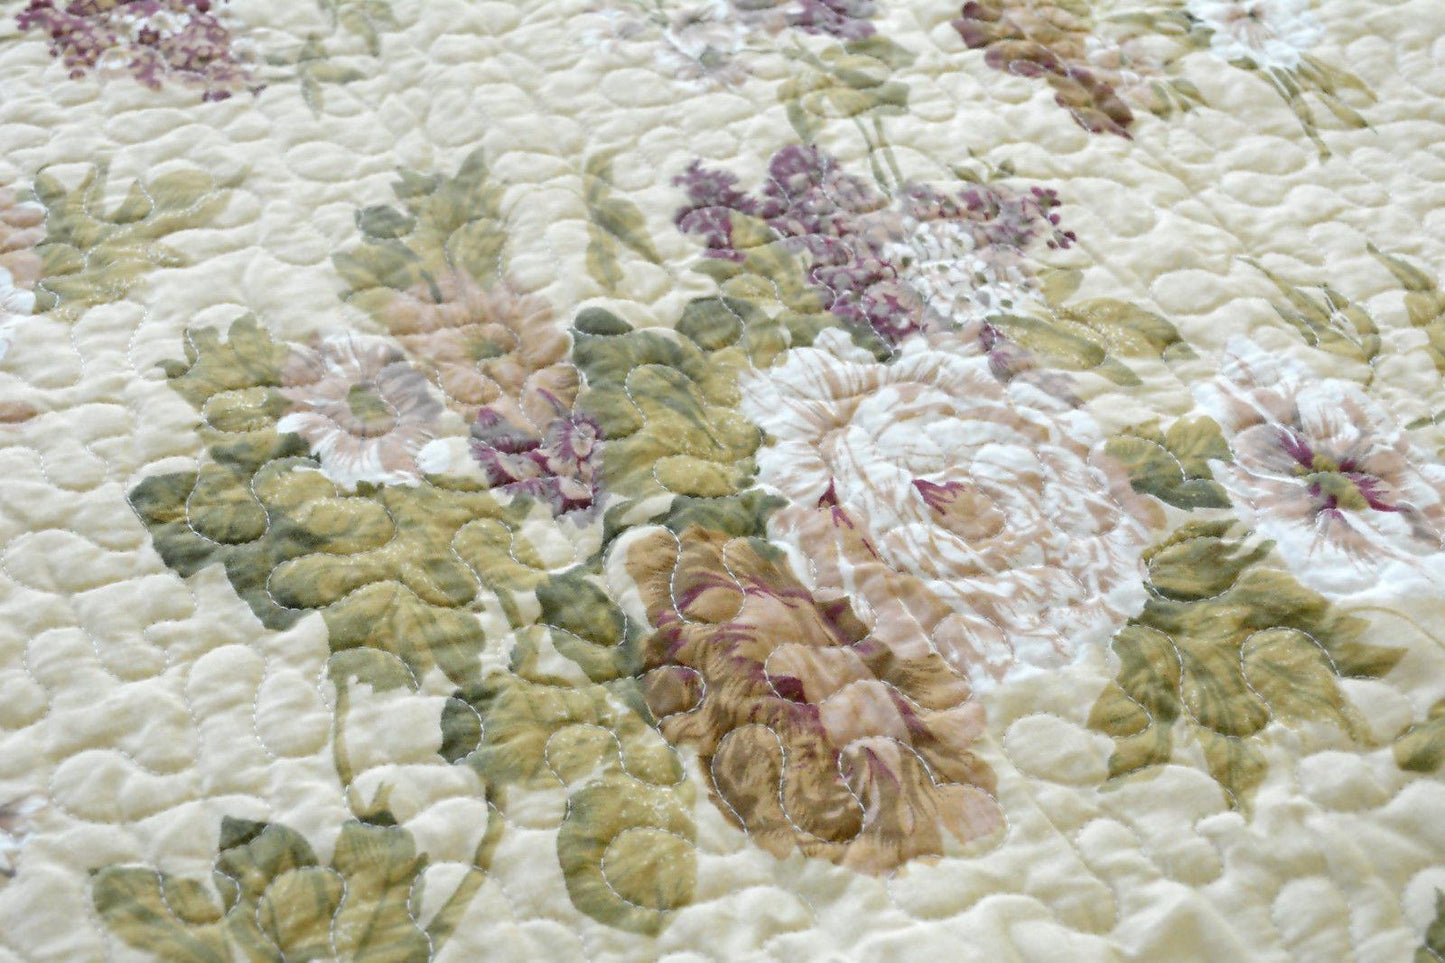 Vintage Cottage Roses Garden Floral Scalloped Patchwork Cotton Quilted Bedspread Set (DXJ103478)